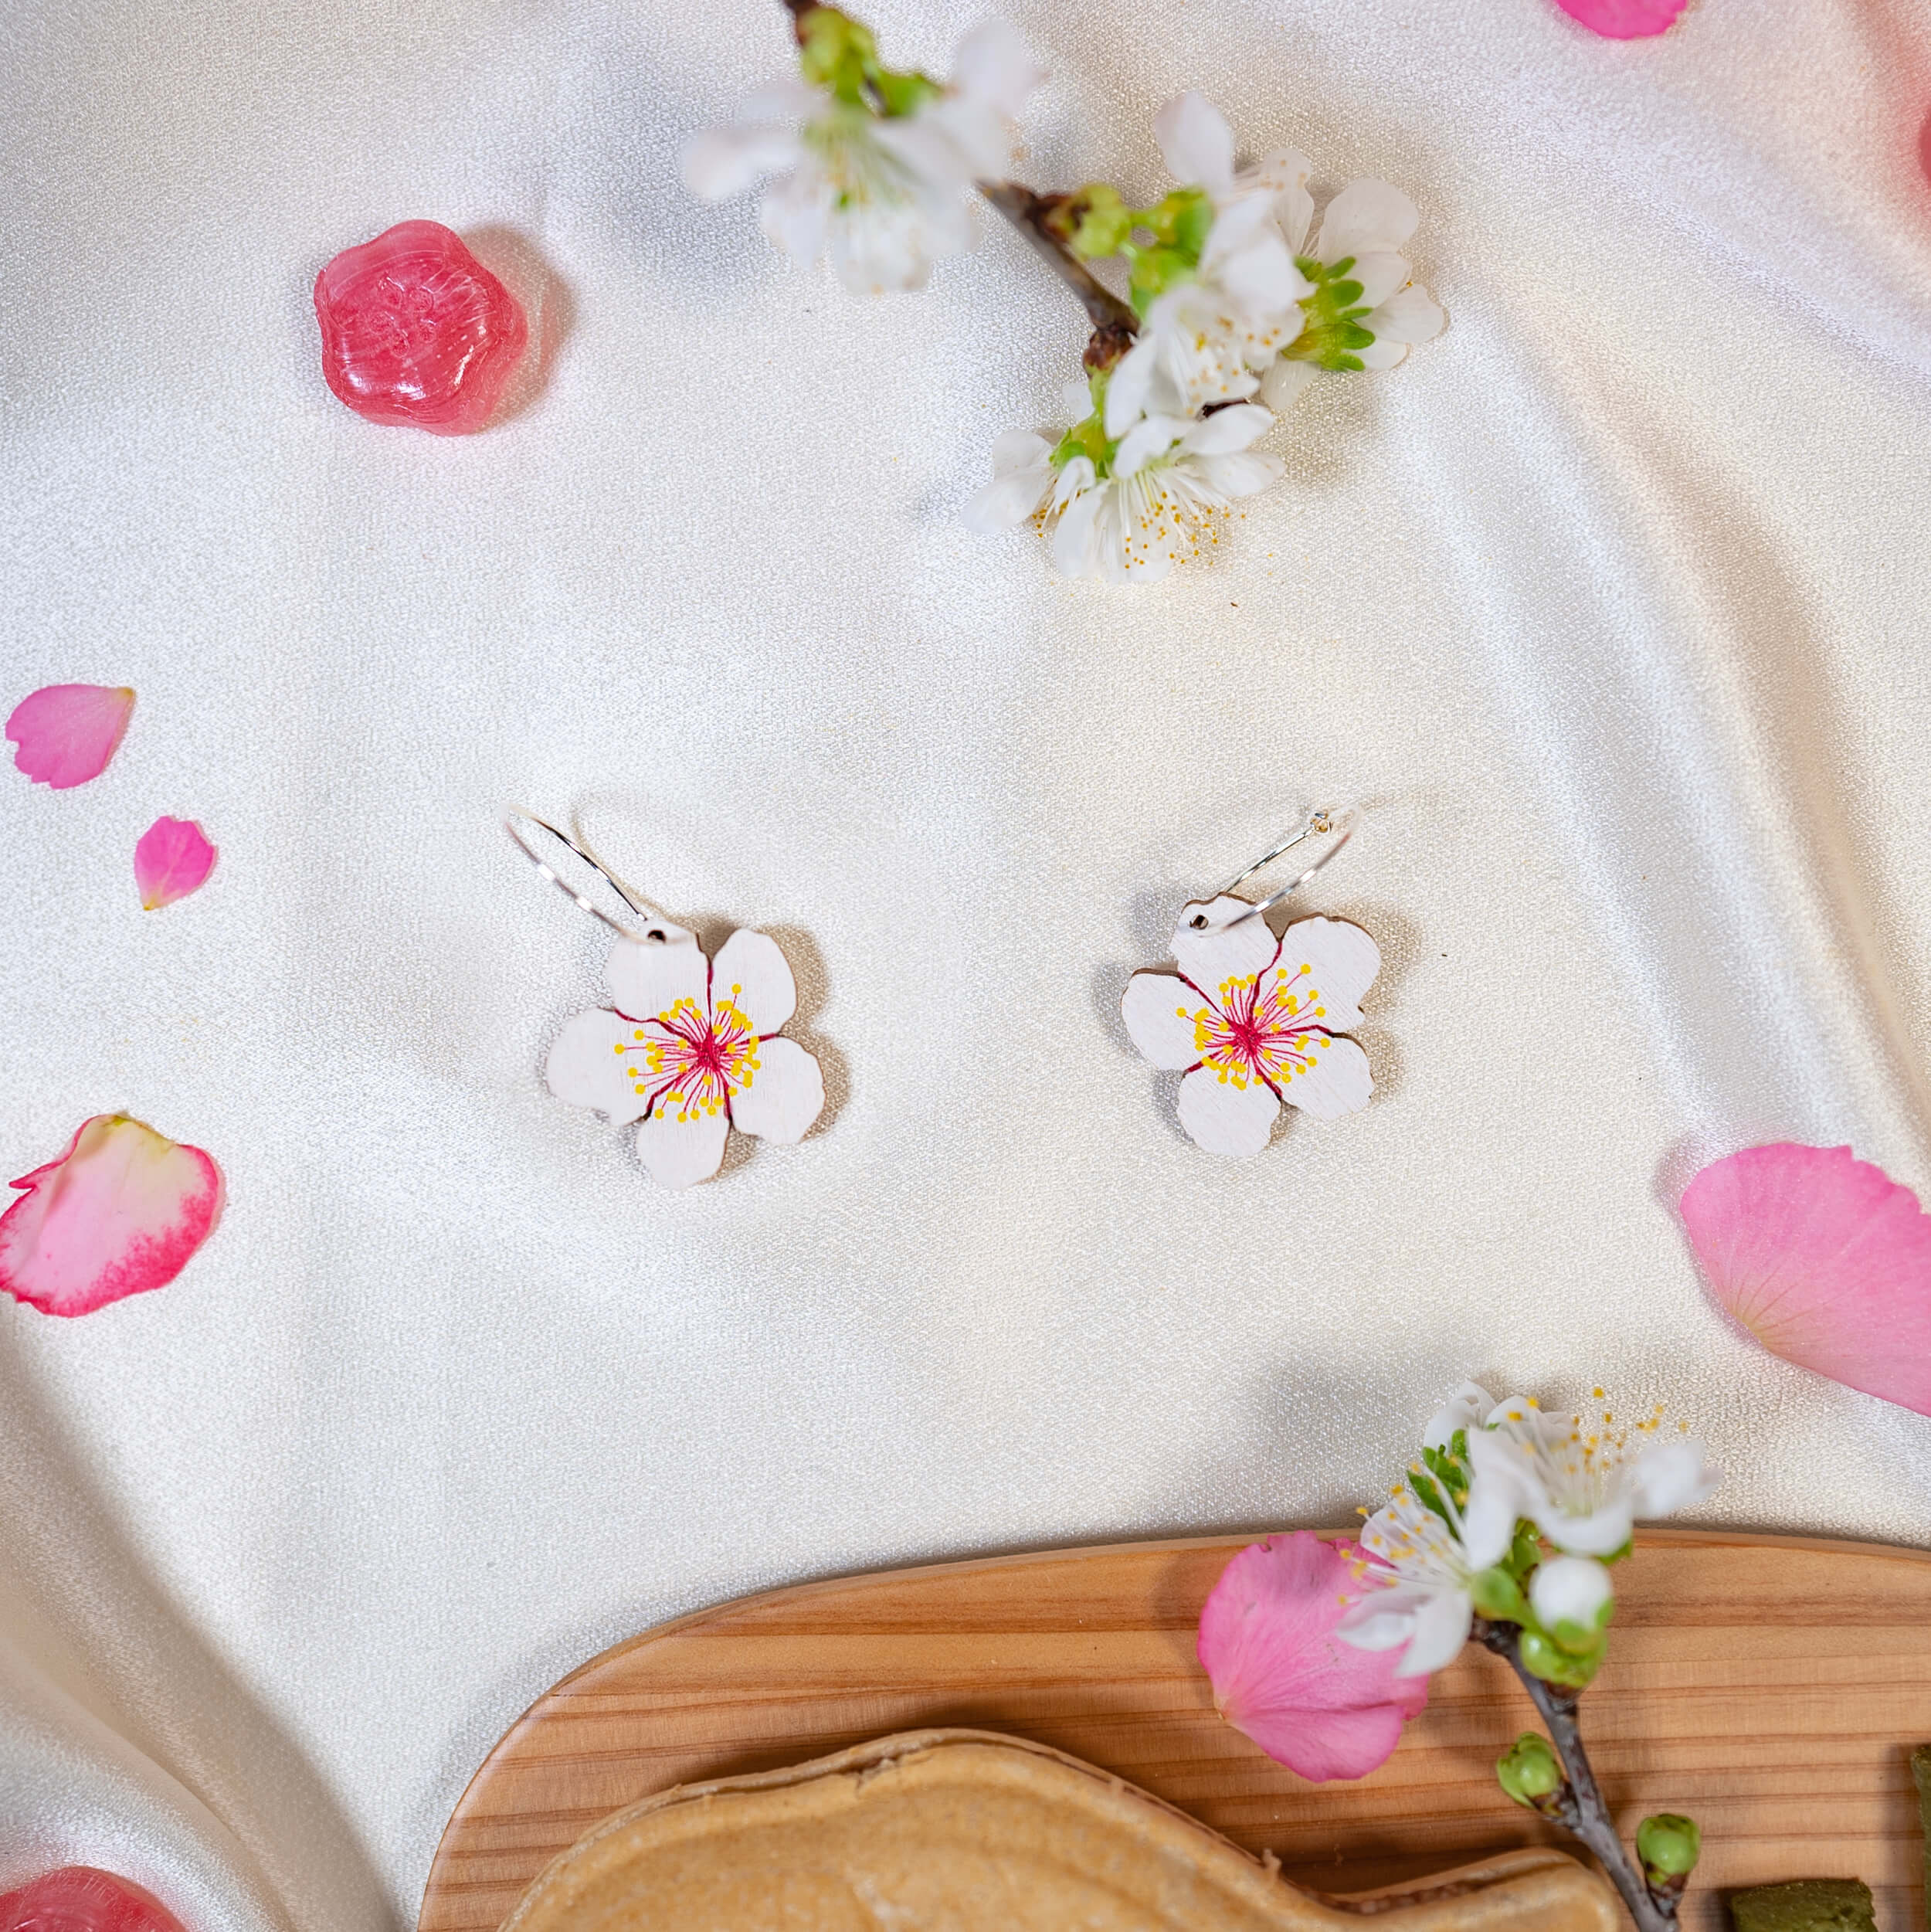 Sakura, eli kirsikankukka, symboloi uuden alkua ja elämän katoavaisuudessa piilevää kauneutta. Nämä kauniit sakurat leijailevat korvasi juurella ja viimeistelevät niin arki- kuin juhlailmeen. Sakura Crush -nimitys tulee nimensä mukaan ihastumisesta kirsikankukkia kohtaan. Upea lahjaidea, joka on käsintehty Suomessa.